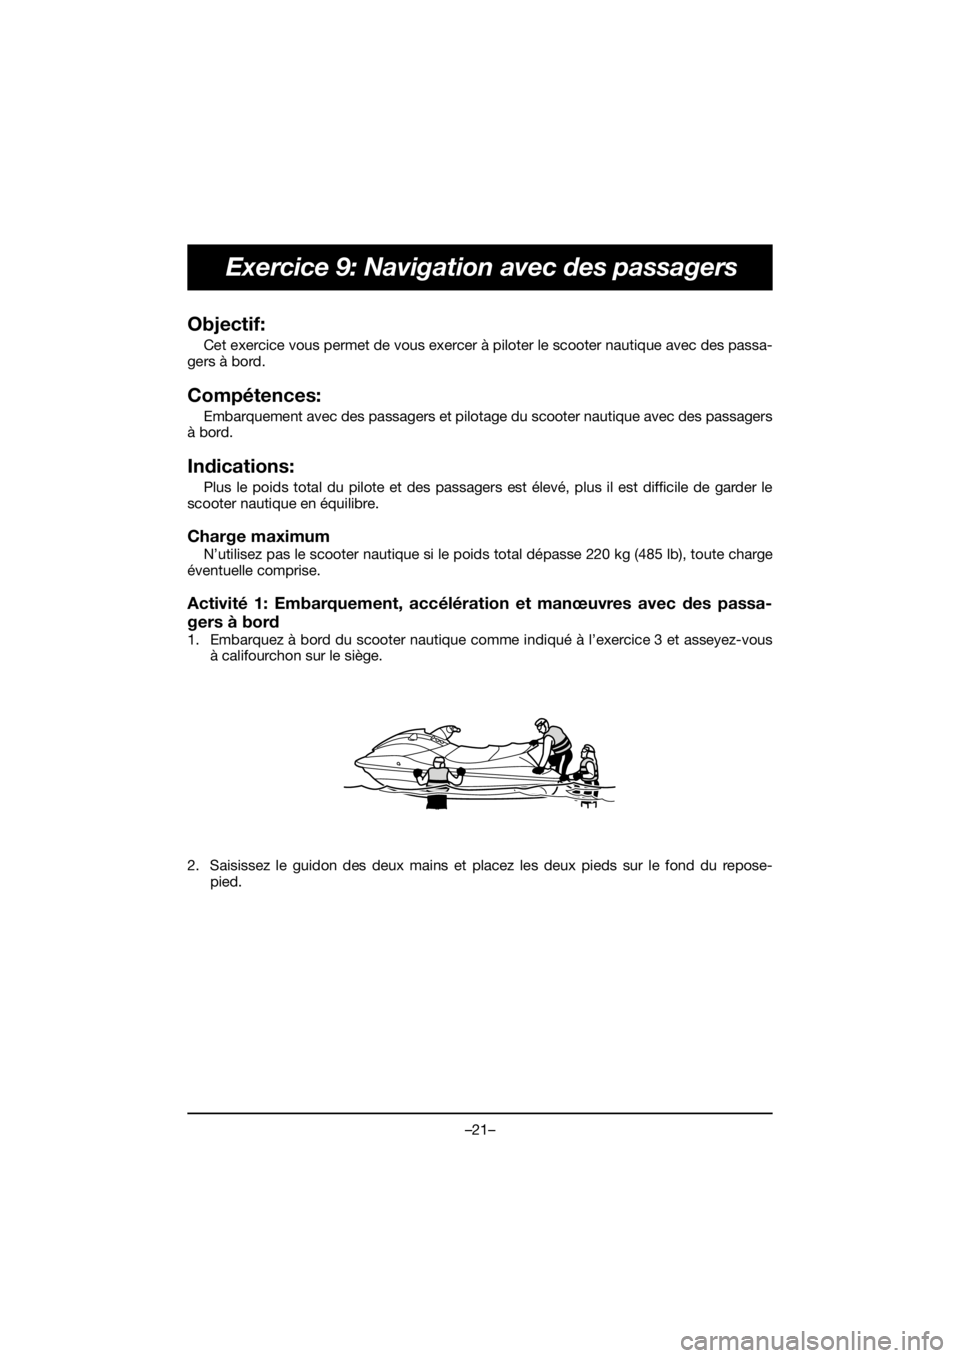 YAMAHA EXR 2020  Notices Demploi (in French) –21–
Exercice 9: Navigation avec des passagers
Objectif: 
Cet exercice vous permet de vous exercer à piloter le scooter nautique avec des passa-
gers à bord.
Compétences: 
Embarquement avec des